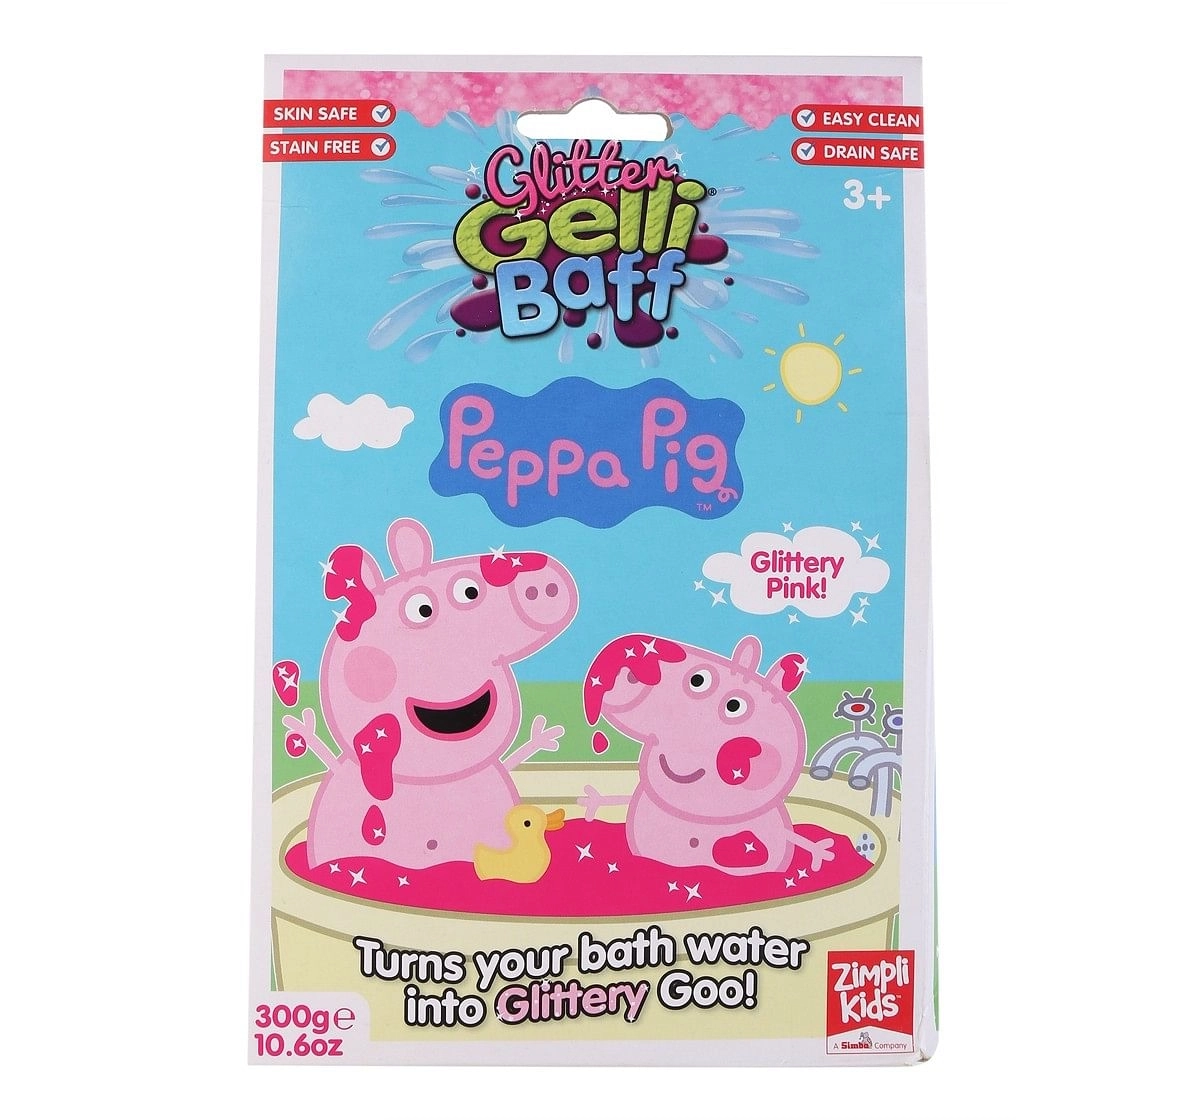 Simba Peppa Pig Glitter Gelli Baff Bath slime powder mix 300gm Multicolor 3Y+